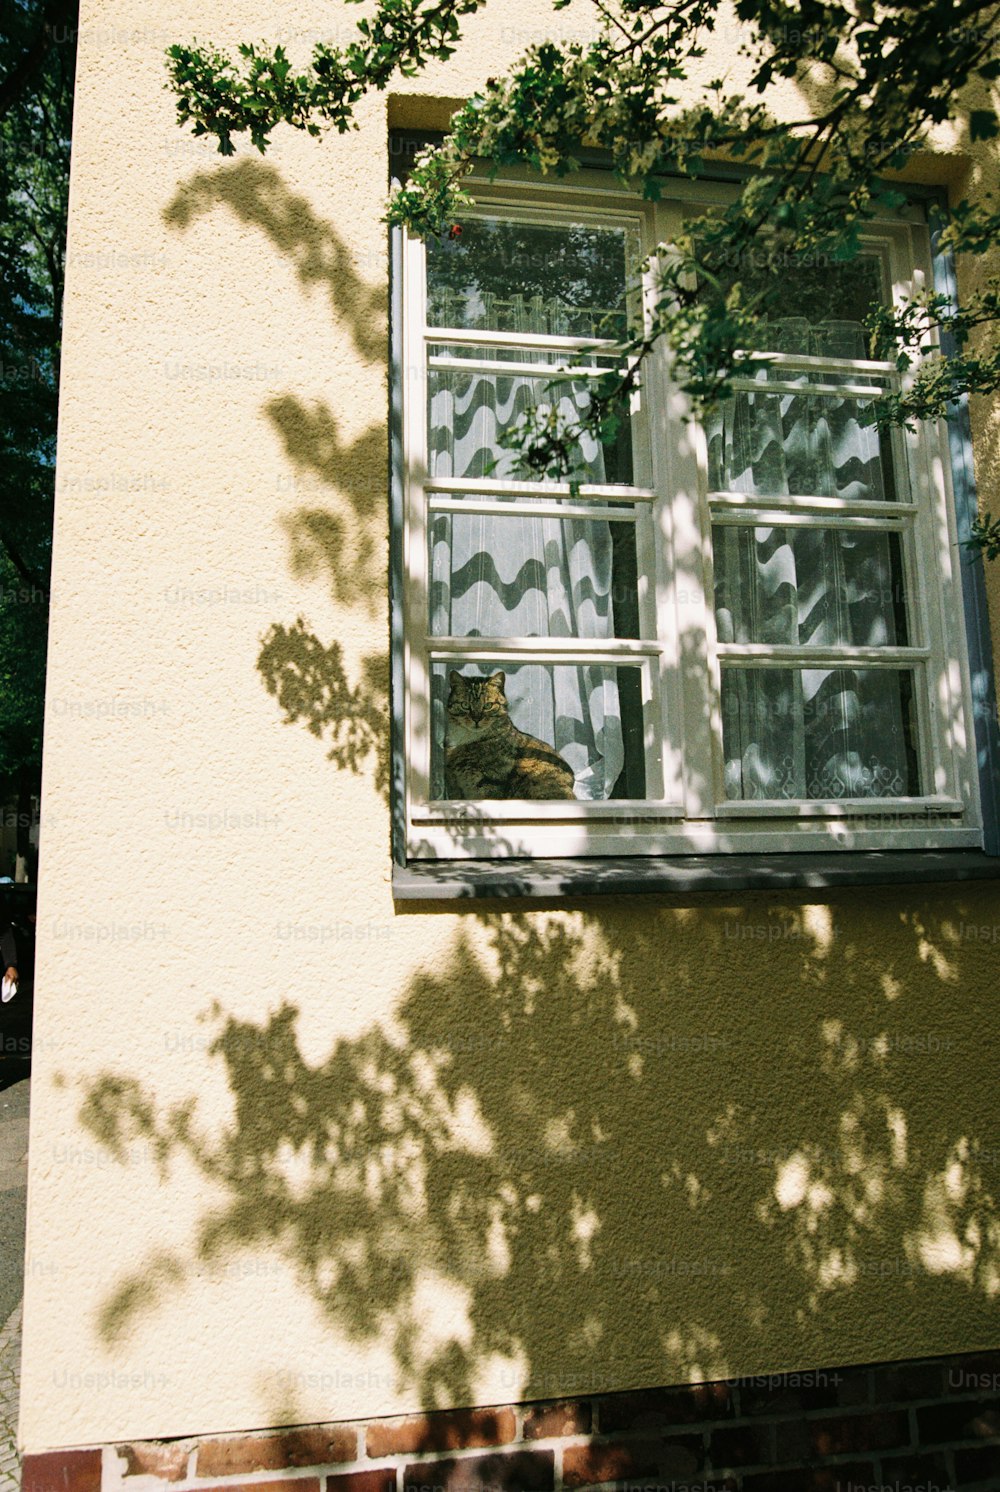 un gatto seduto sul davanzale di una finestra che guarda fuori dalla finestra